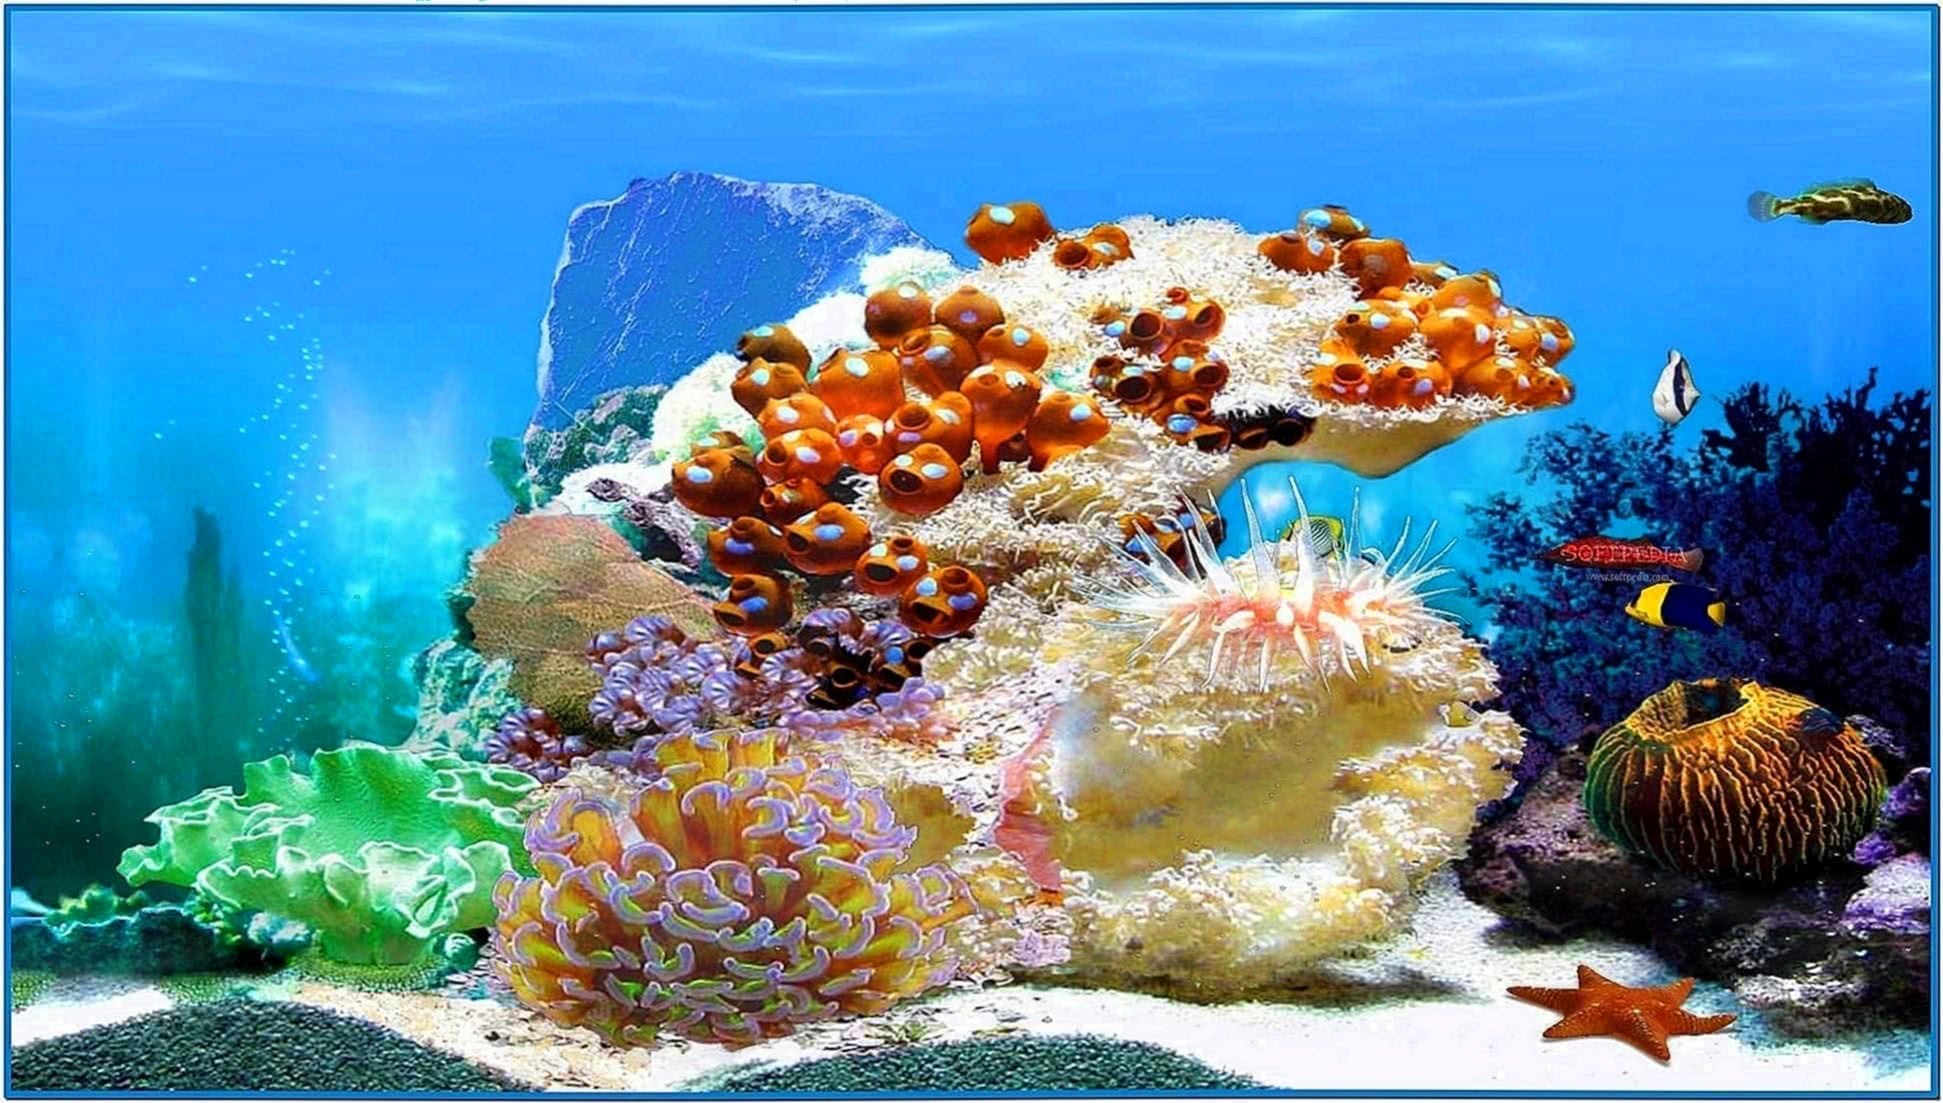 3D Aquarium Screensaver and Wallpaper